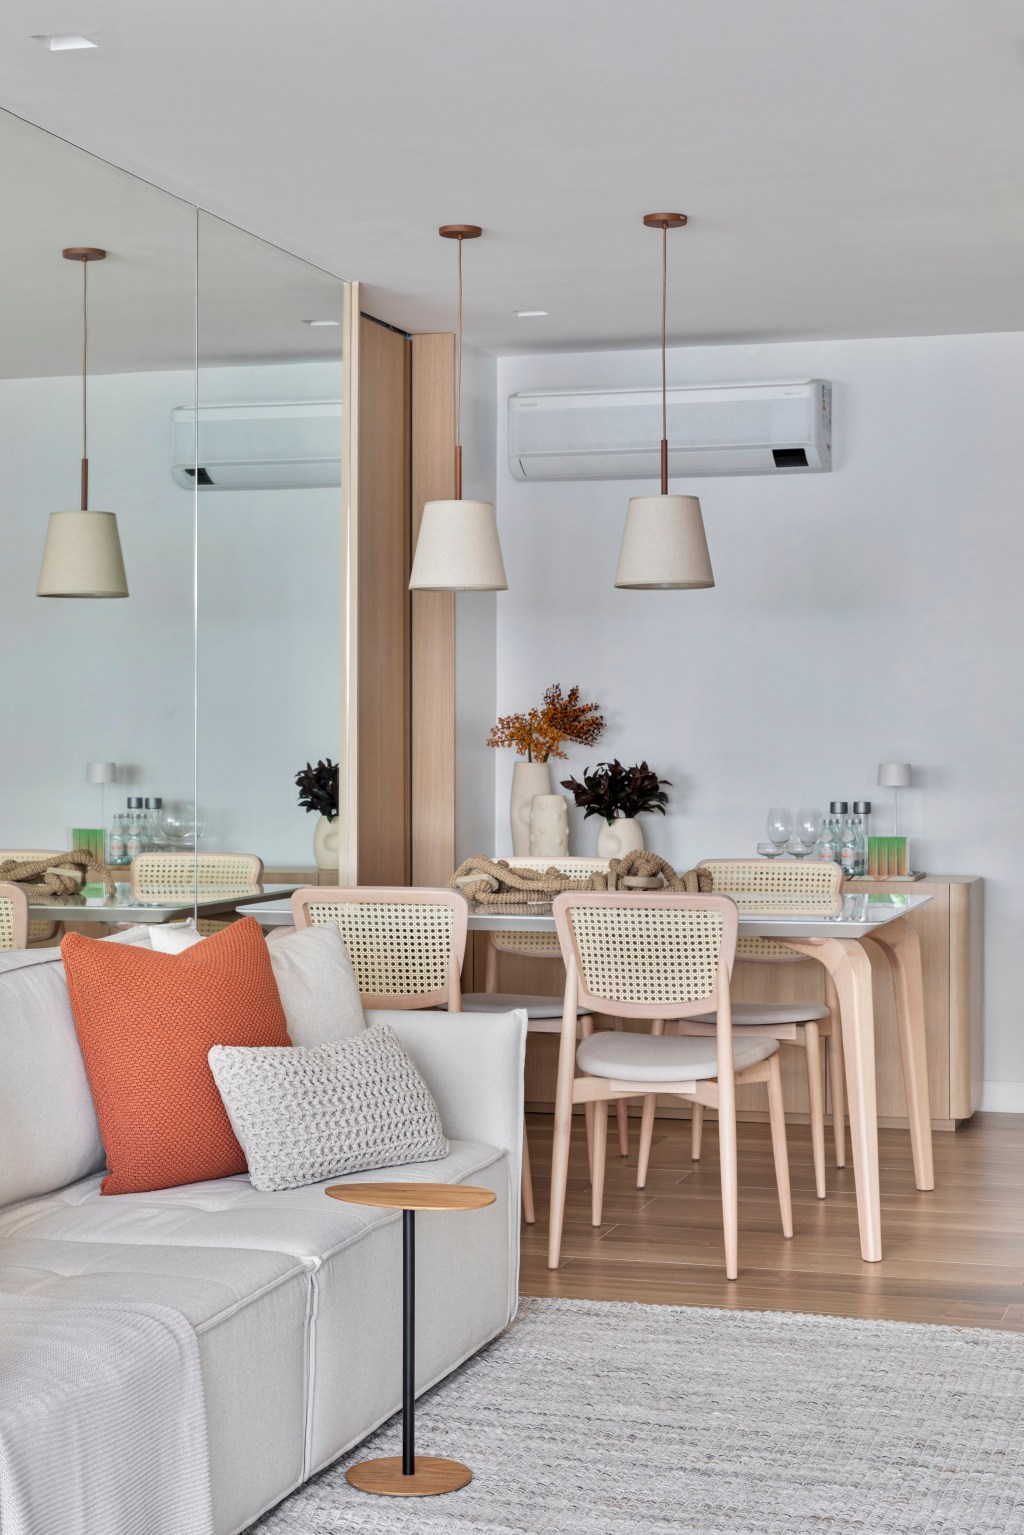 Apartamento de 70 m² parece maior com décor em tons neutros. Projeto de Fabiano Ravaglia. Na foto, sala de jantar com parede espelhada.